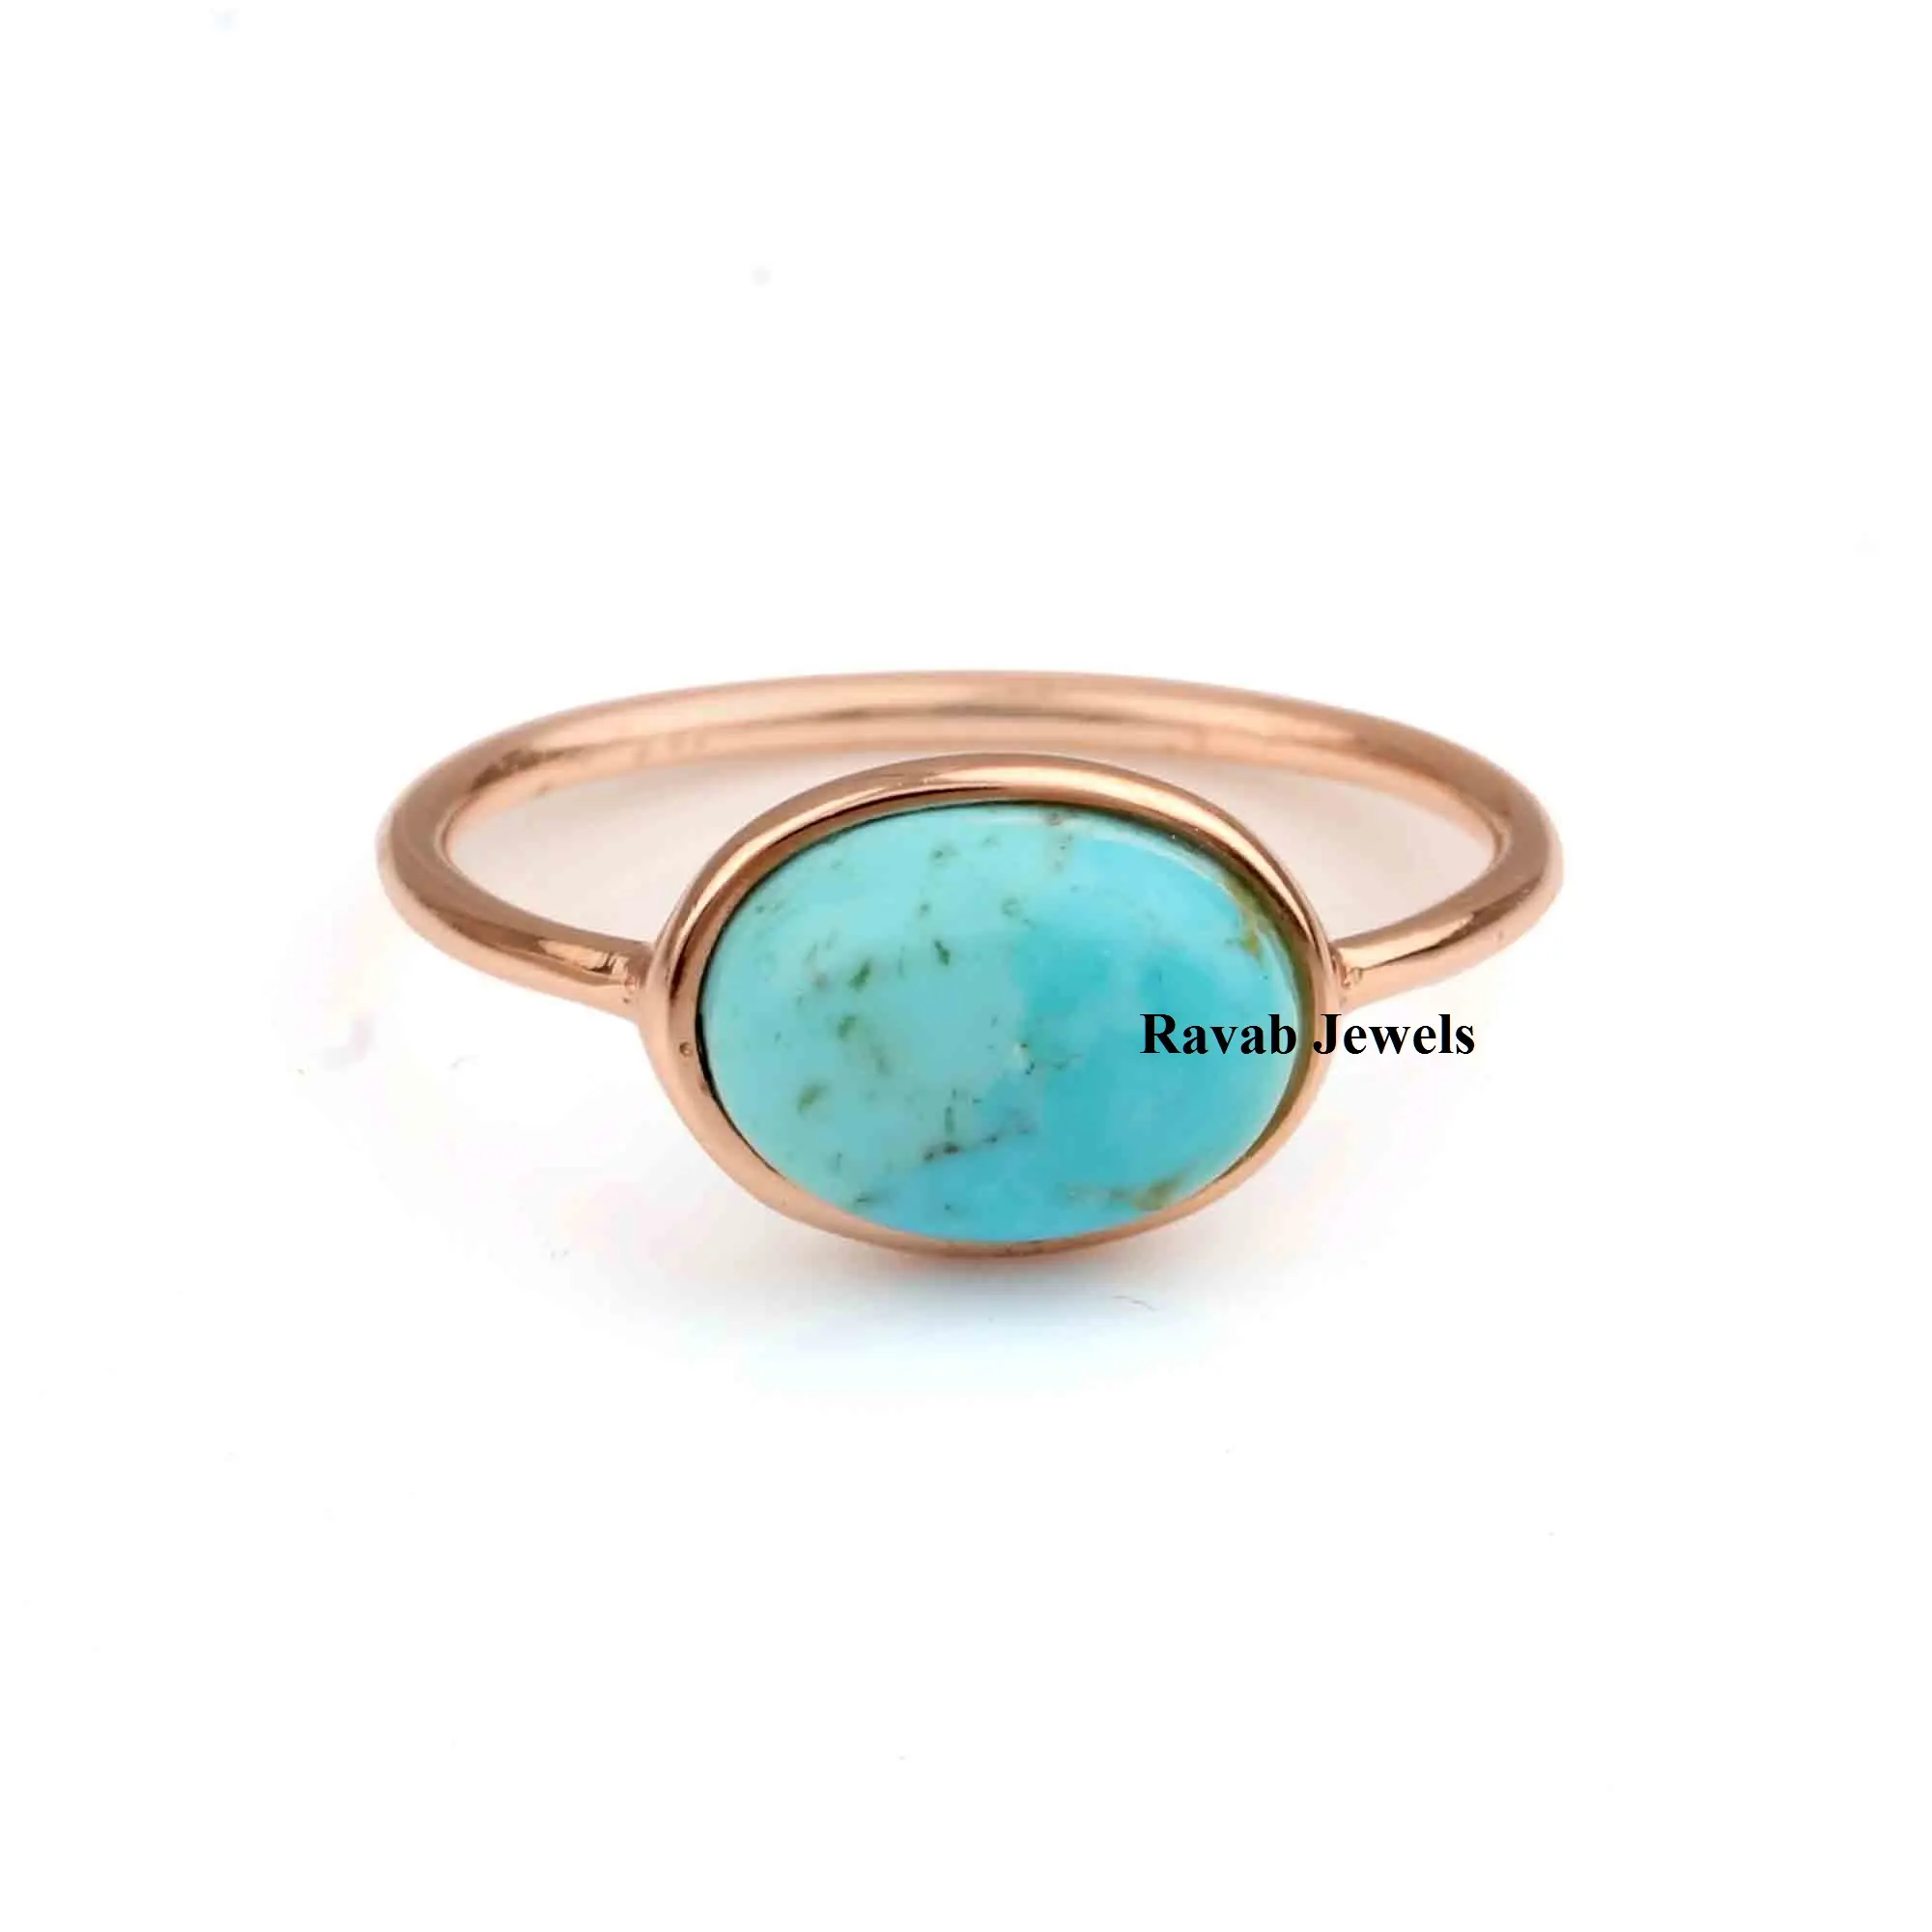 RJR0221 Plata de Ley de alta calidad Natural Bella Durmiente Arizona turquesa ovalada 10x14mm anillo de piedras preciosas joyería de regalo para mujeres